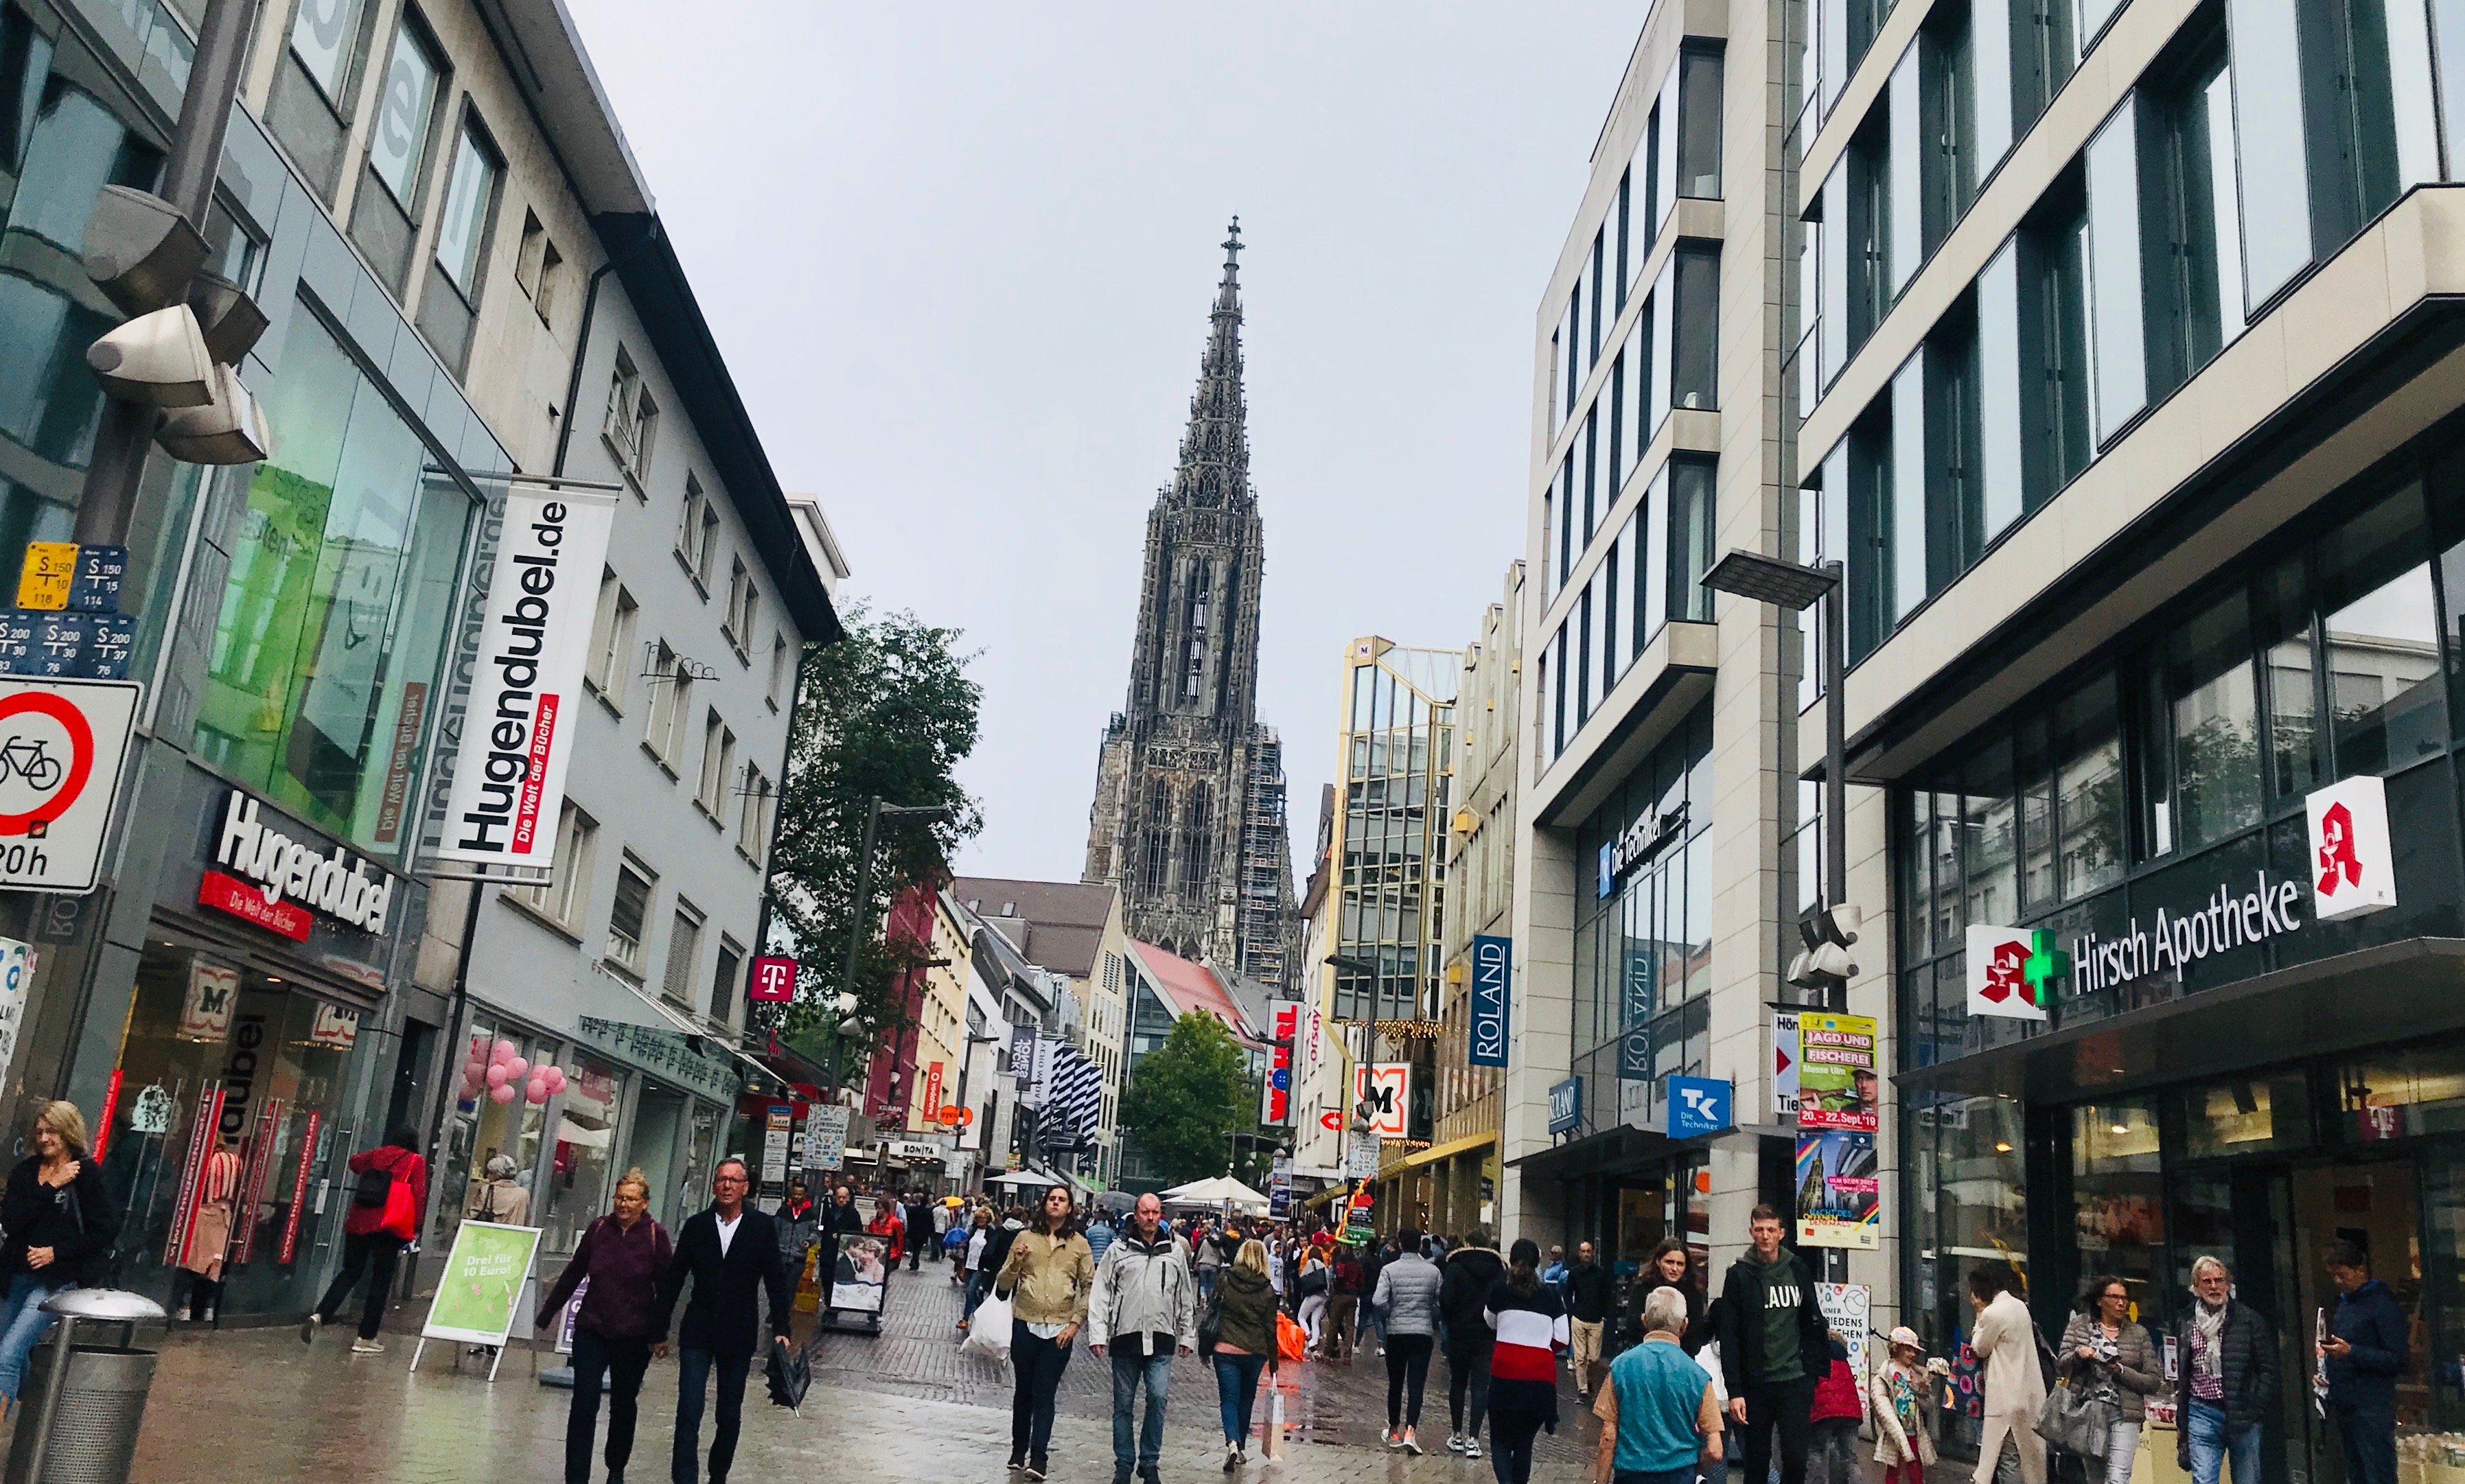 ulm, munsterplatz shopping street walking street main loaction in ulm